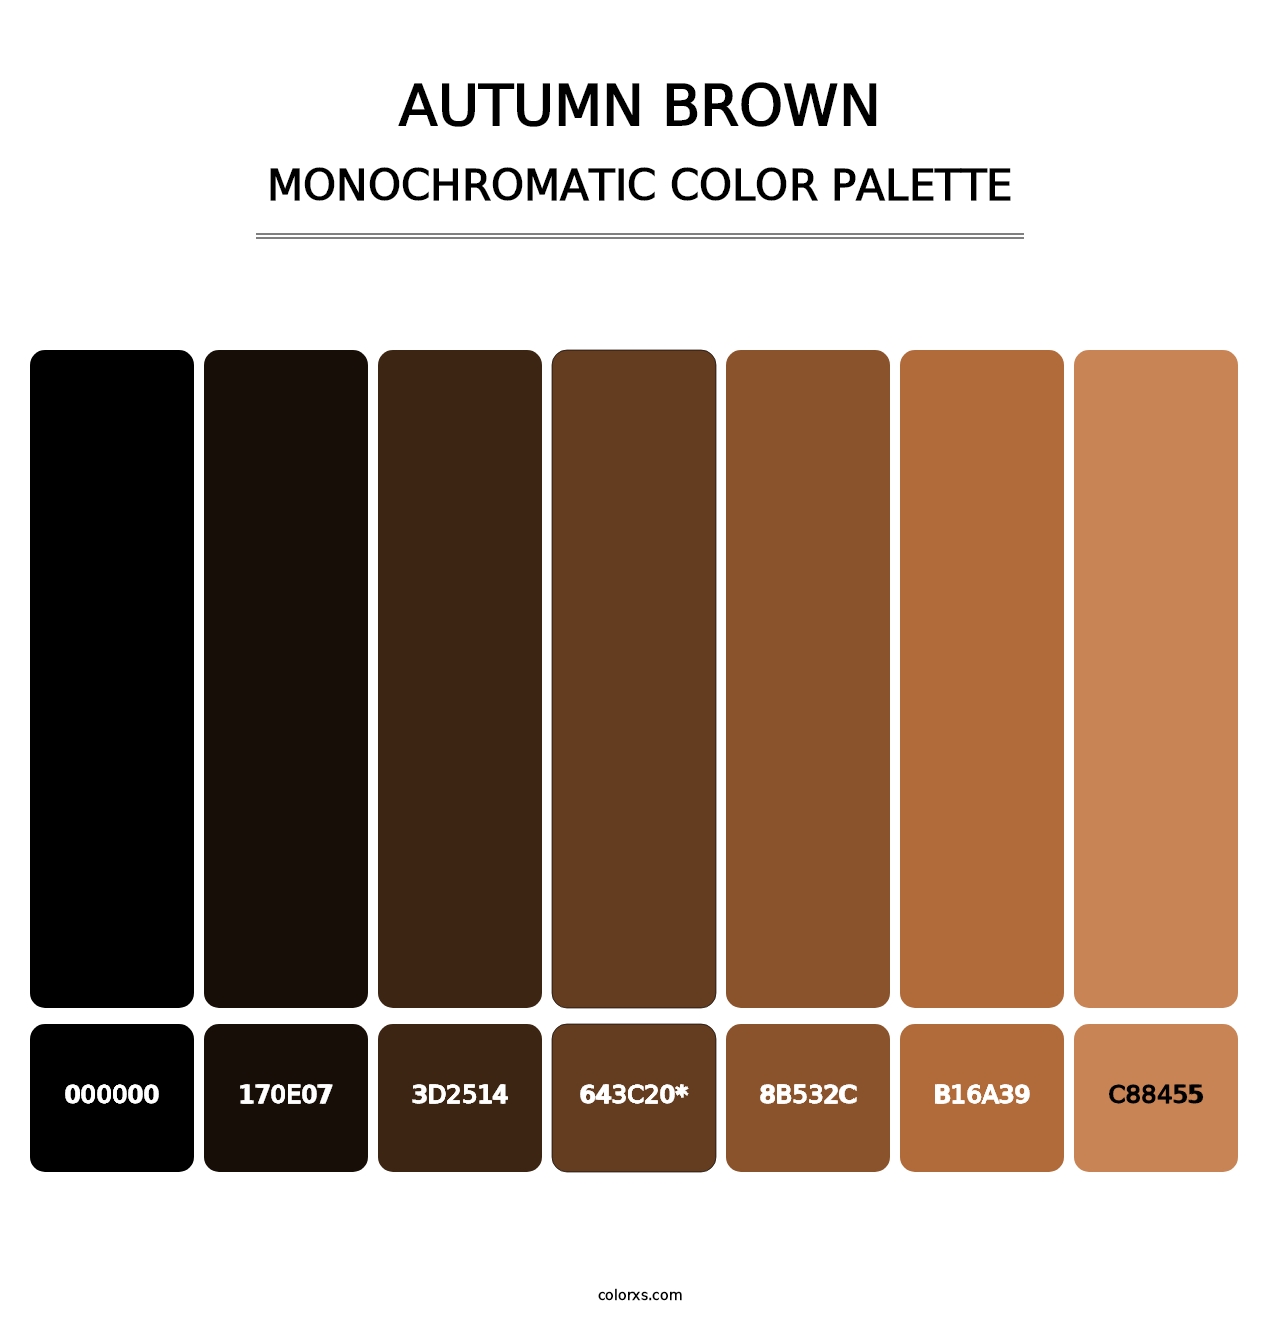 Autumn Brown - Monochromatic Color Palette